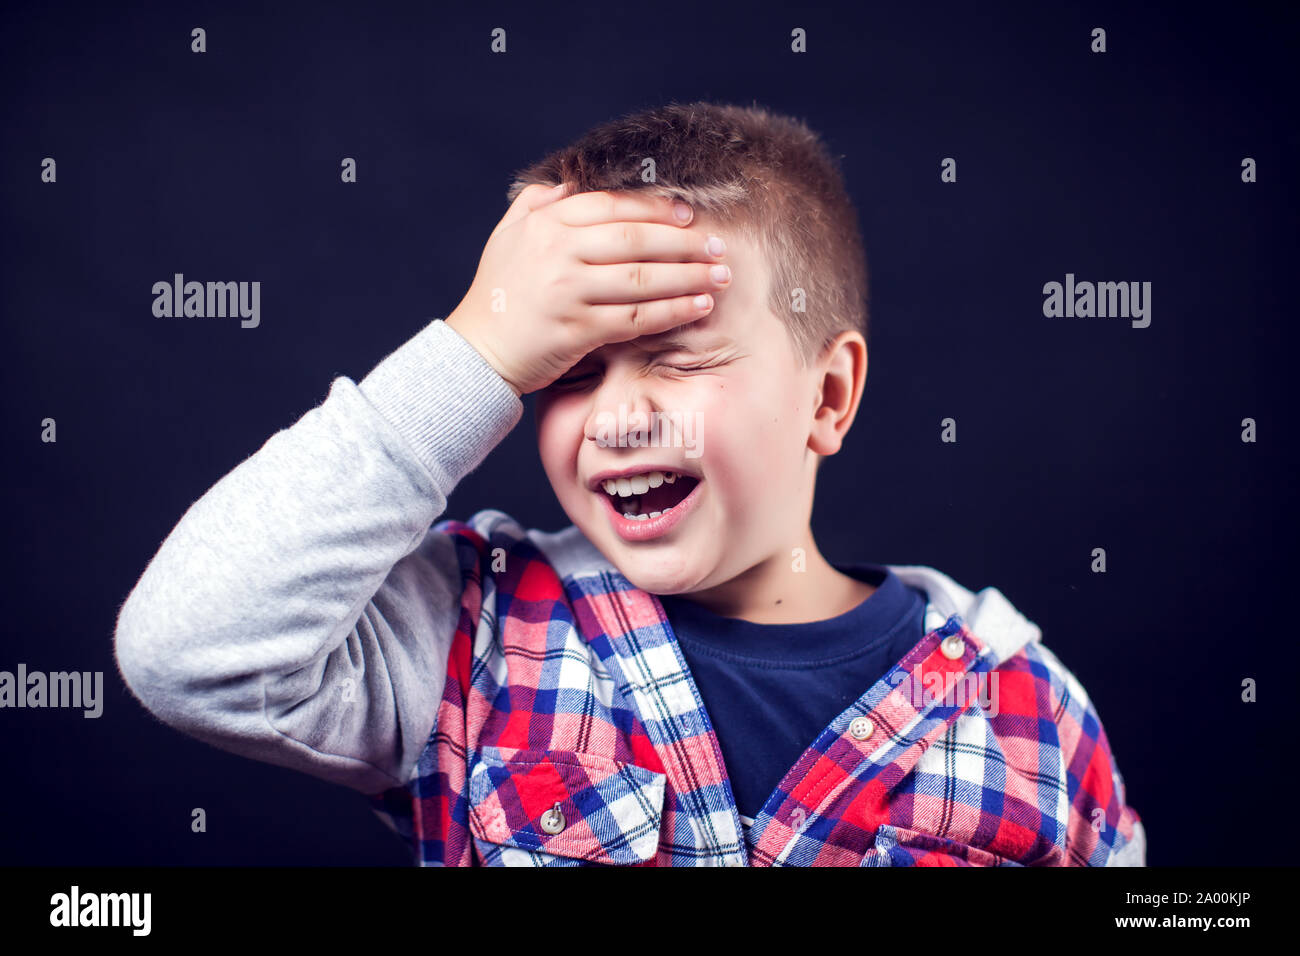 A boy feels strong headache. Children, healthcare and medicine concept Stock Photo